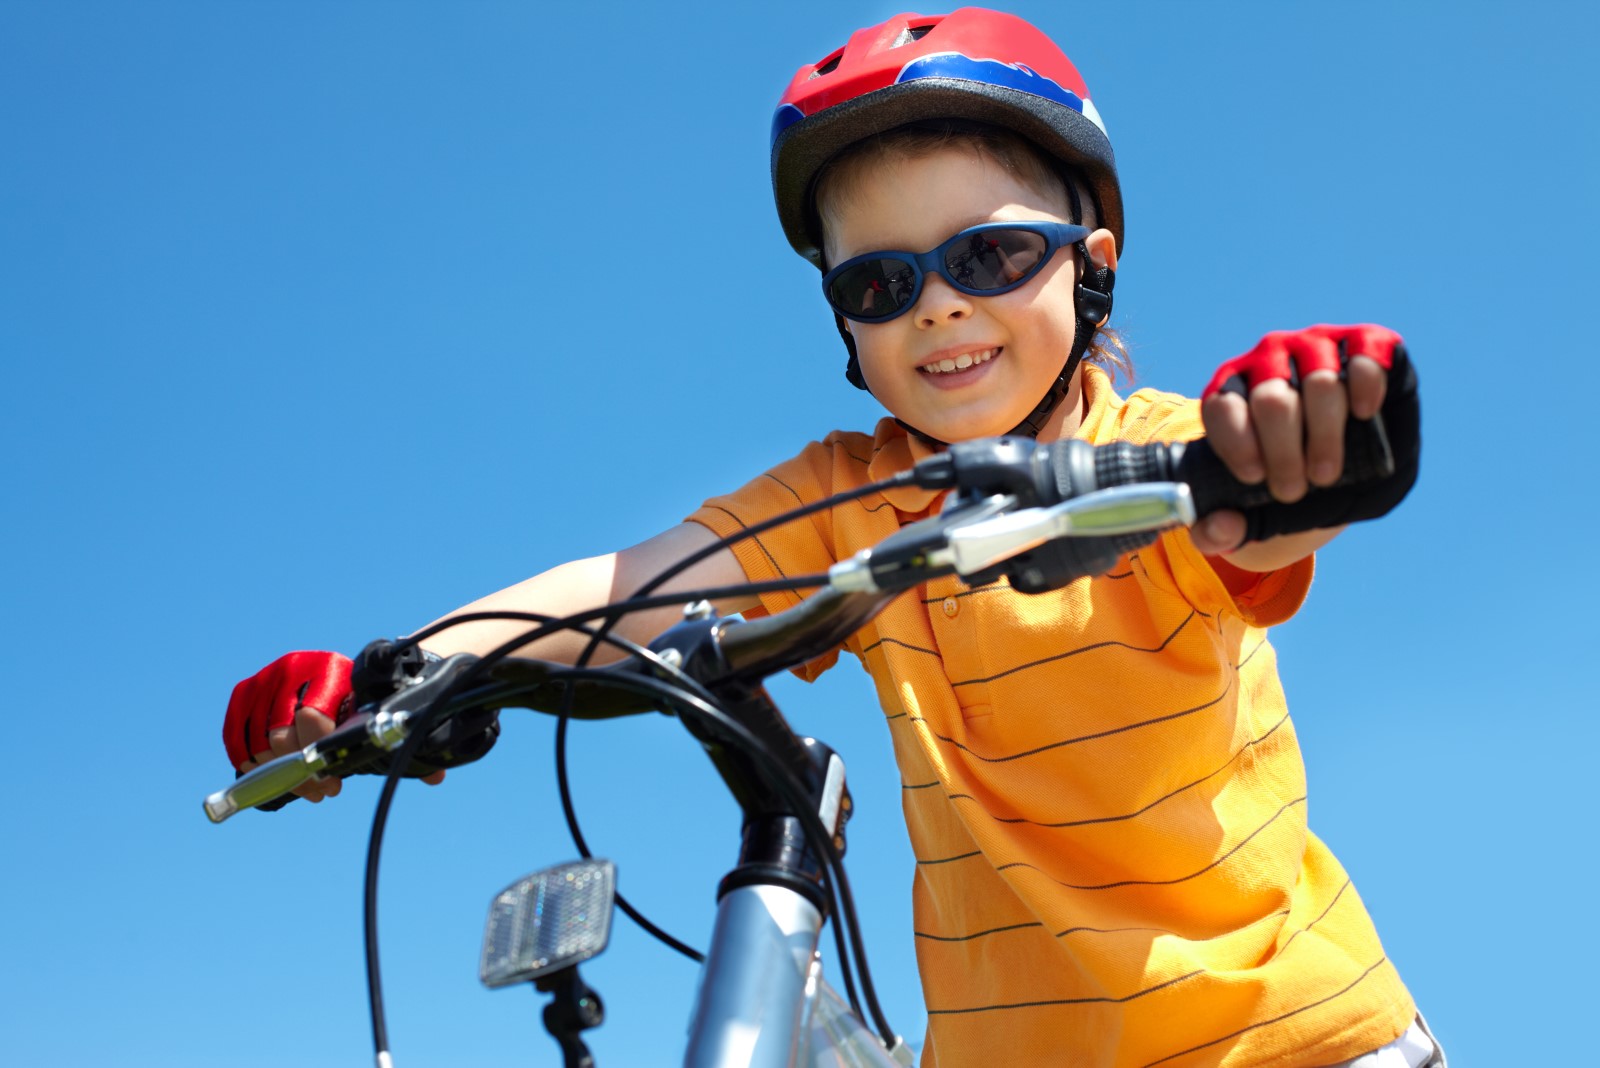 boy in red helmet holding bicycle handlebars